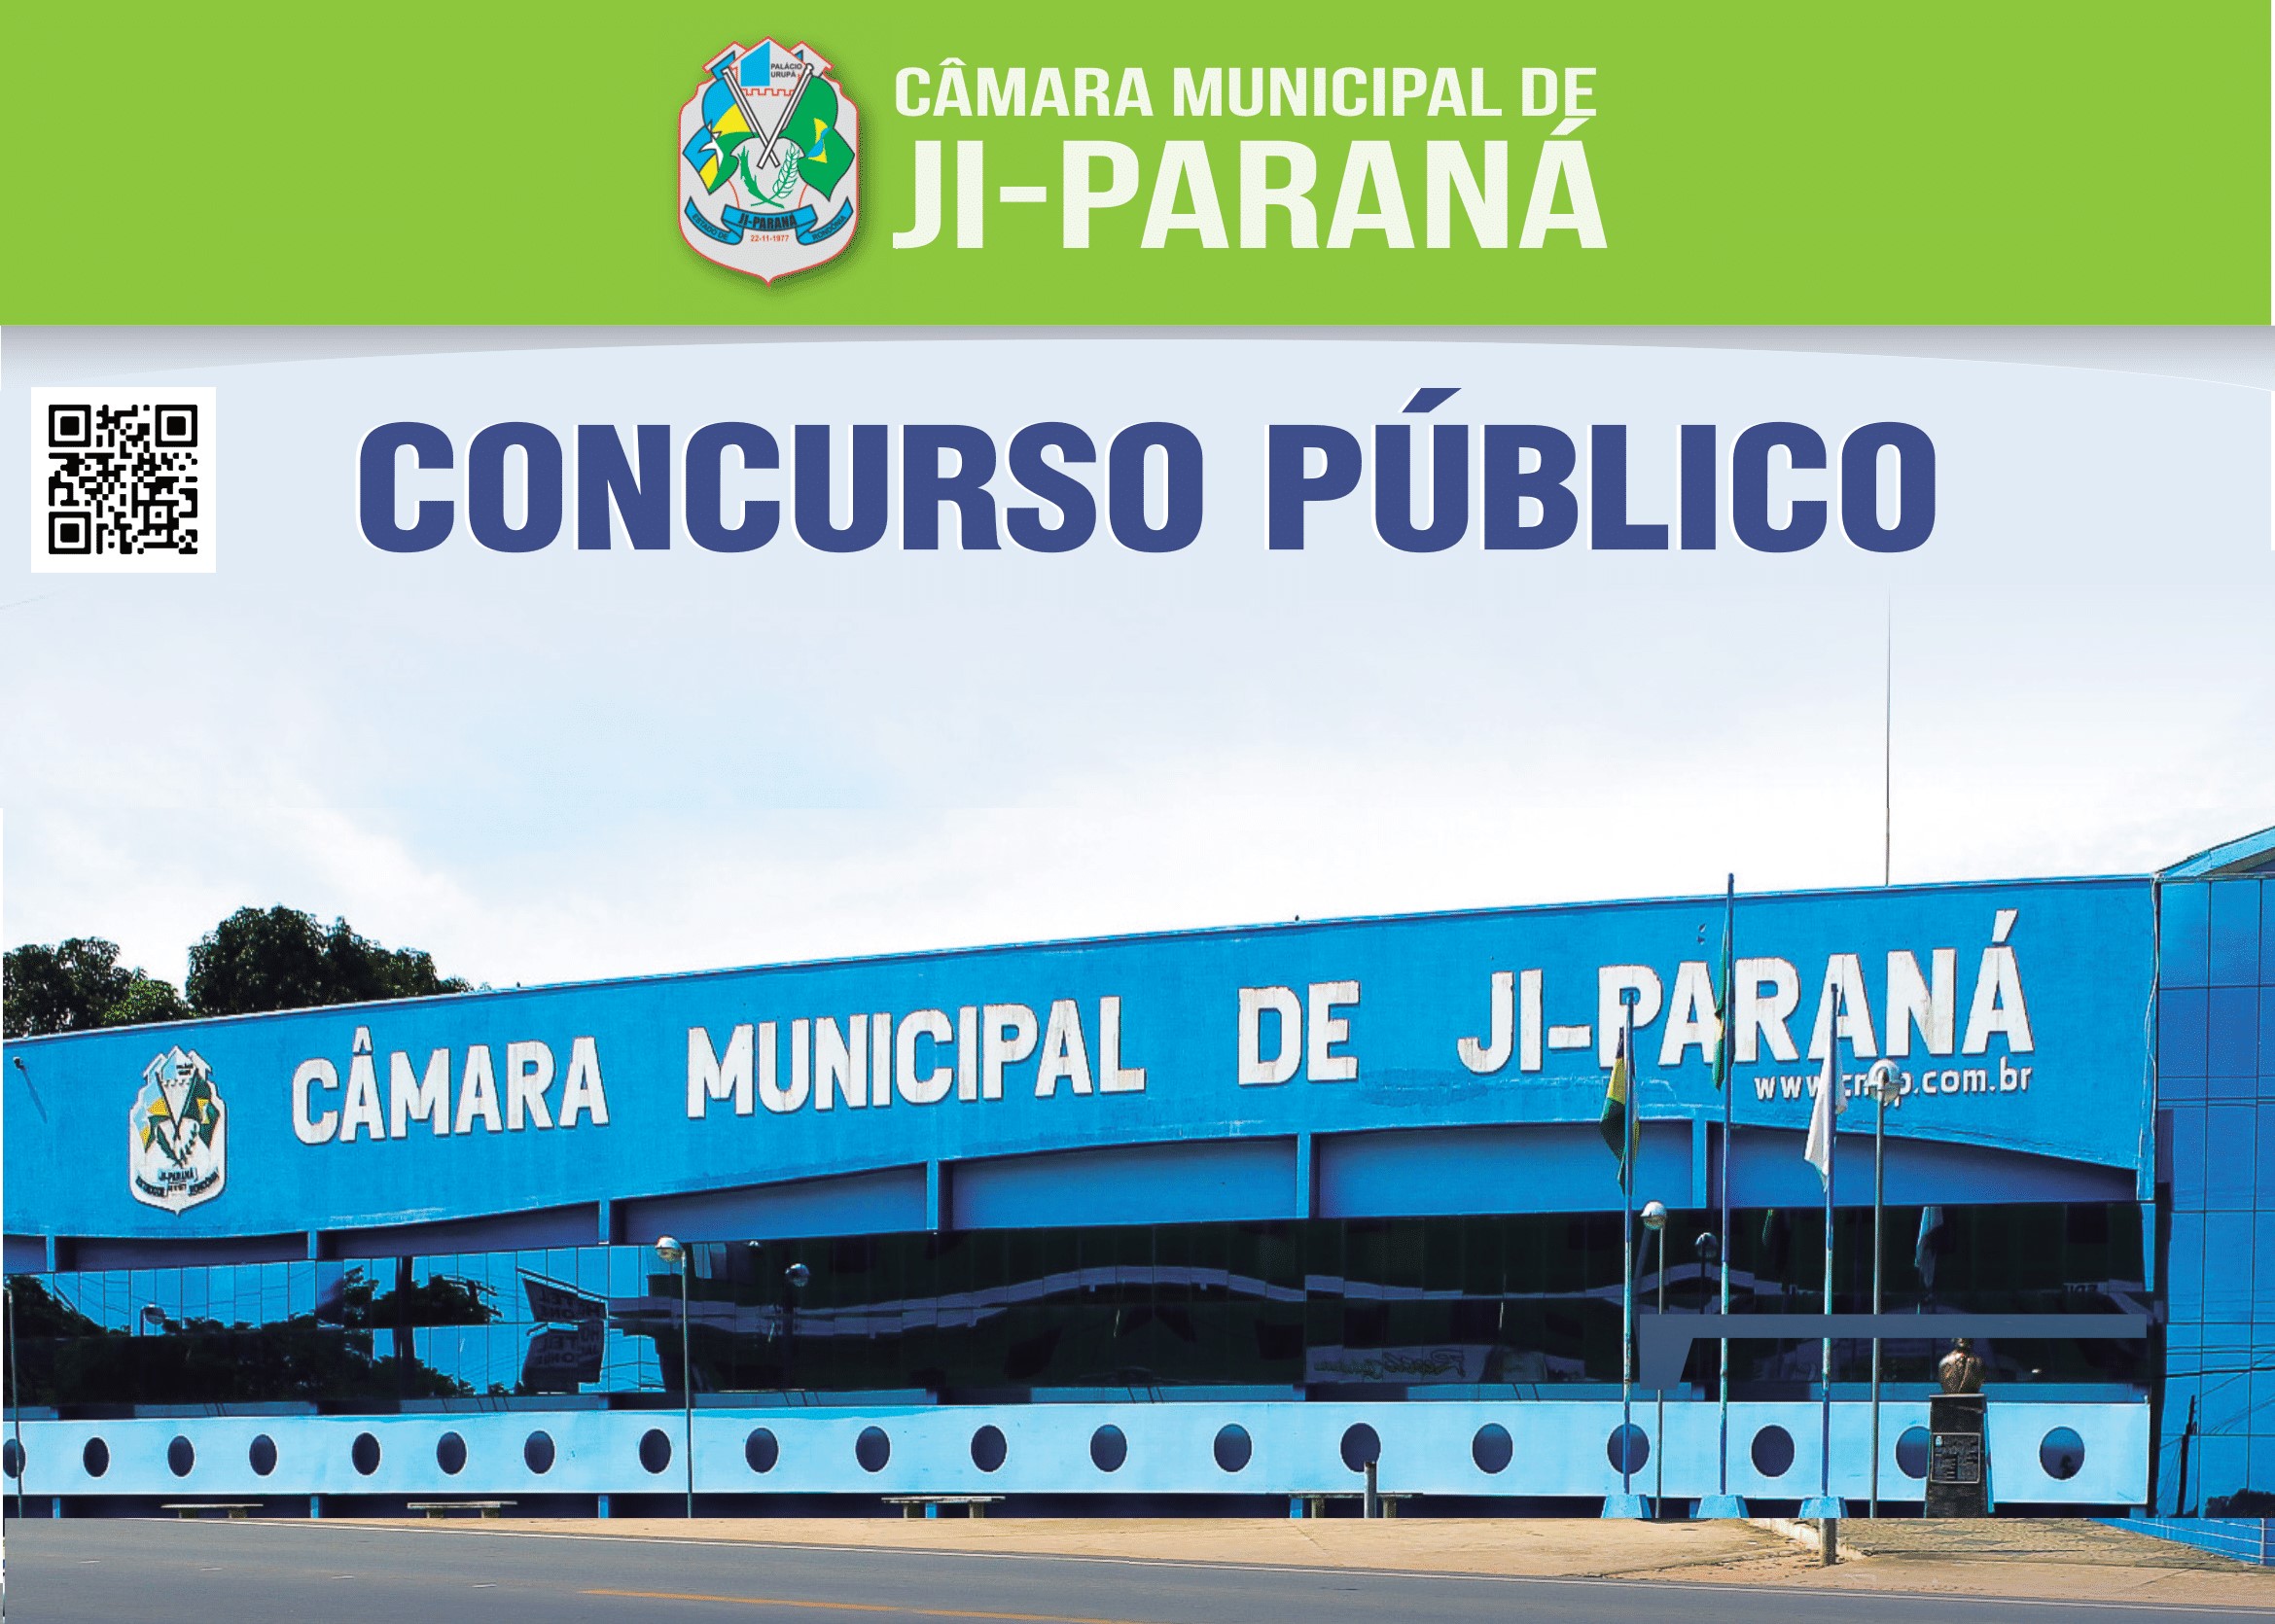 Concurso Publico Câmara Municipal de Ji-Paraná